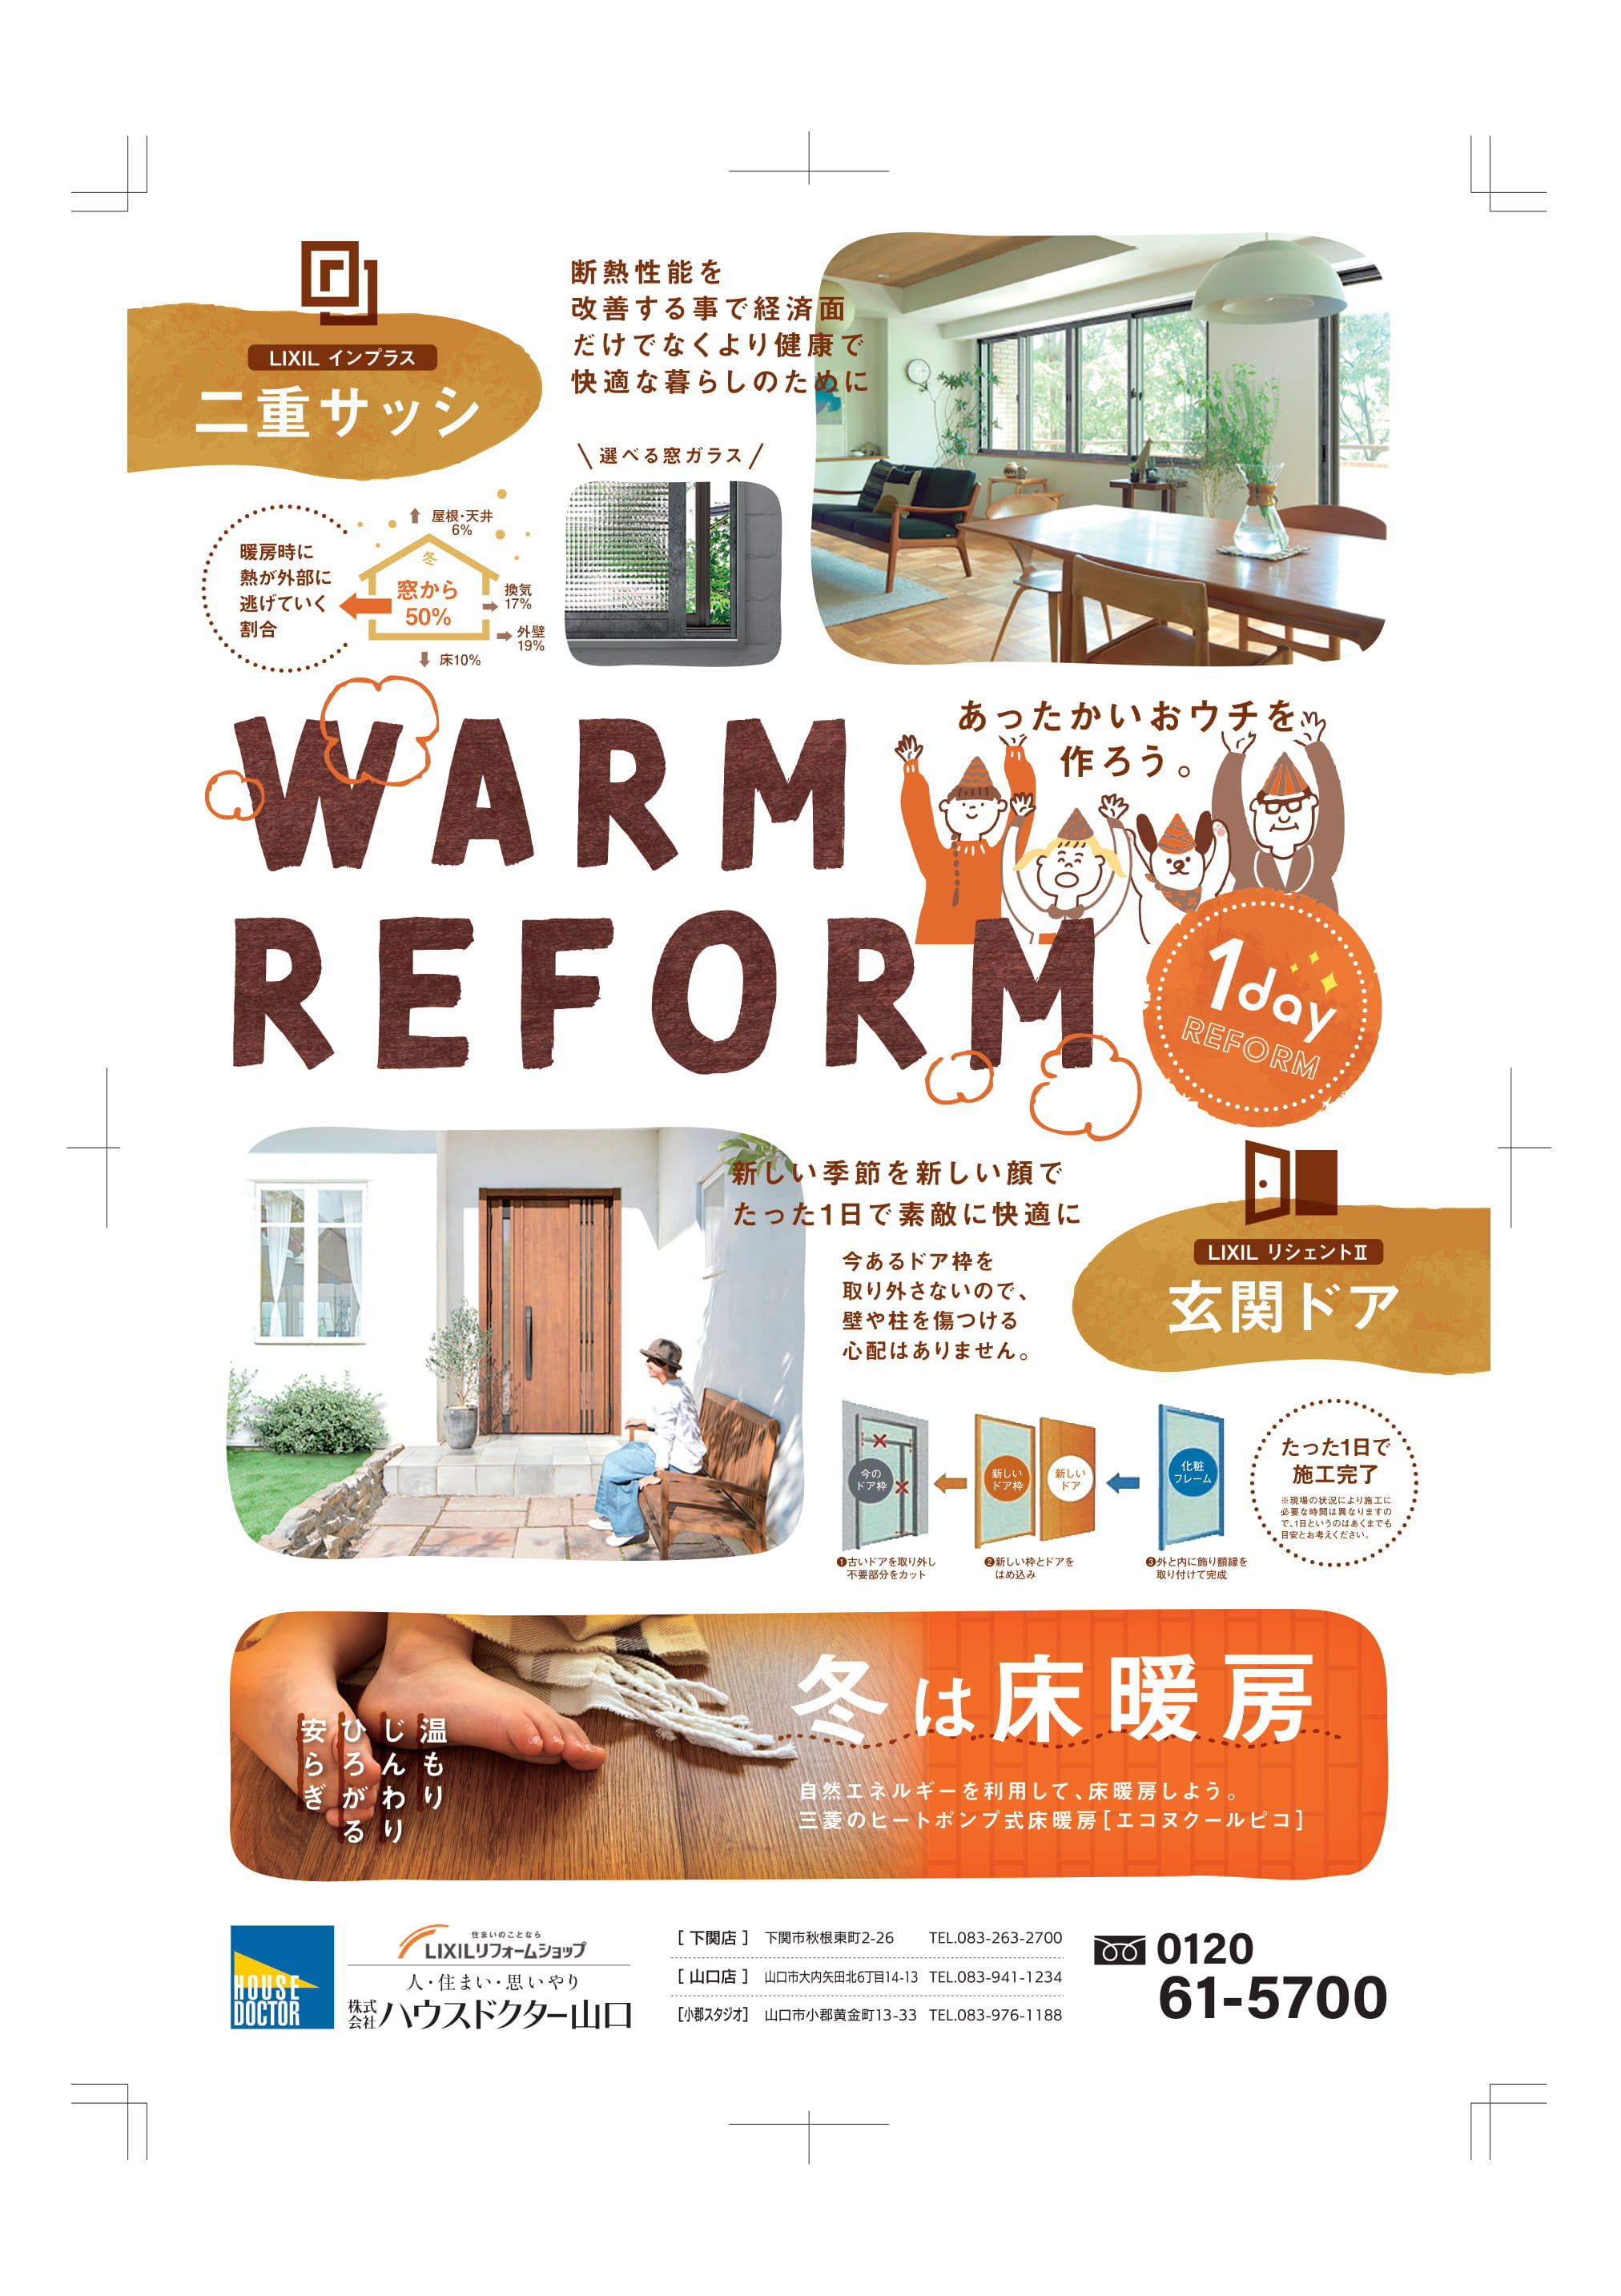 2012繝上え繧ｹ繝医ｙ繧ｯ繧ｿ繝ｼ_warm reform A4-1.jpg